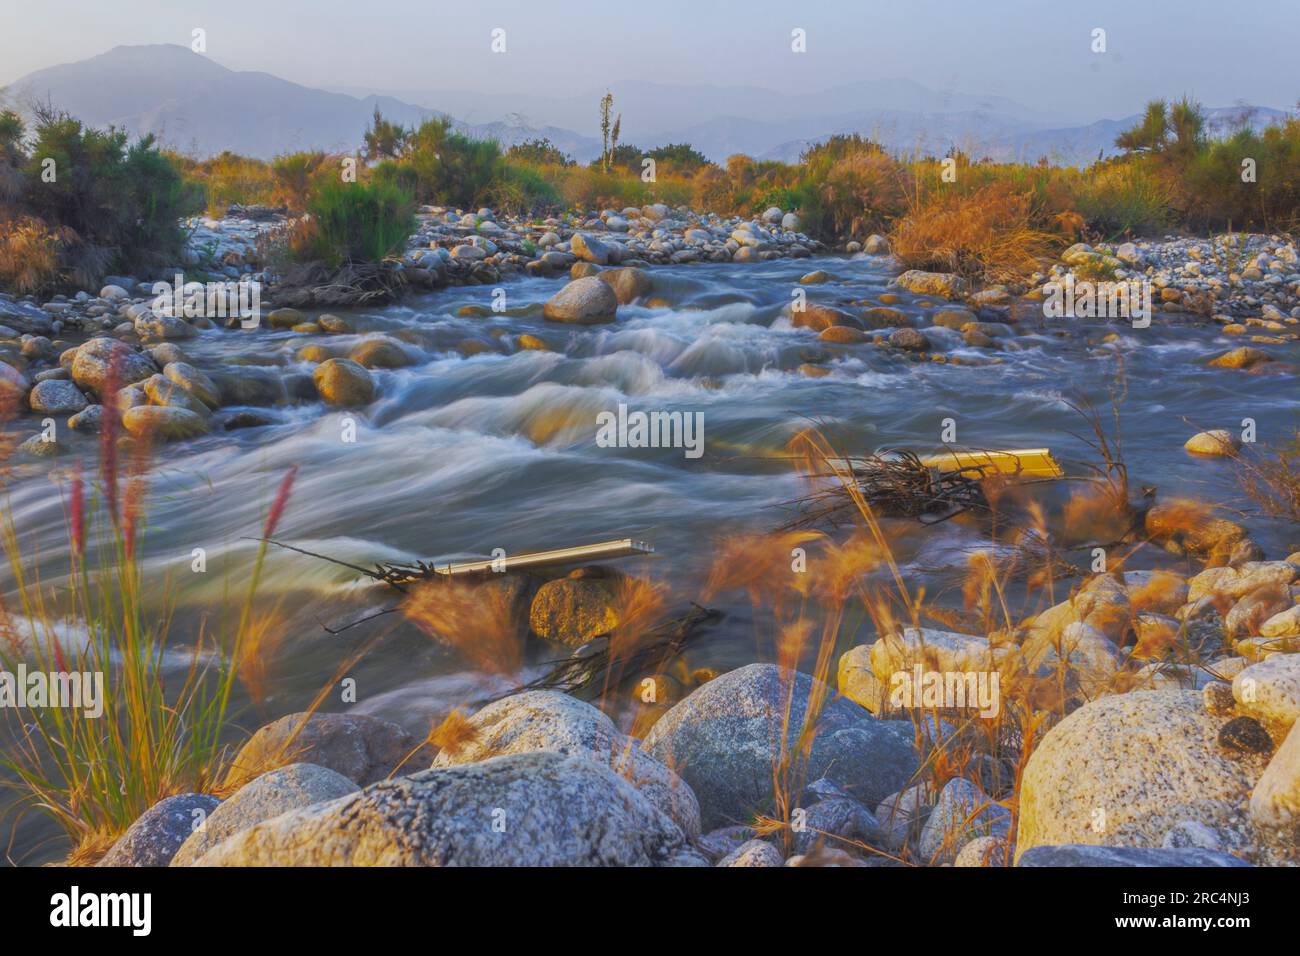 La lunga esposizione cattura la bellezza serena del fiume Santa Ana, Redlands, CA - evidenziando un tranquillo flusso d'acqua in mezzo a un paesaggio vibrante Foto Stock